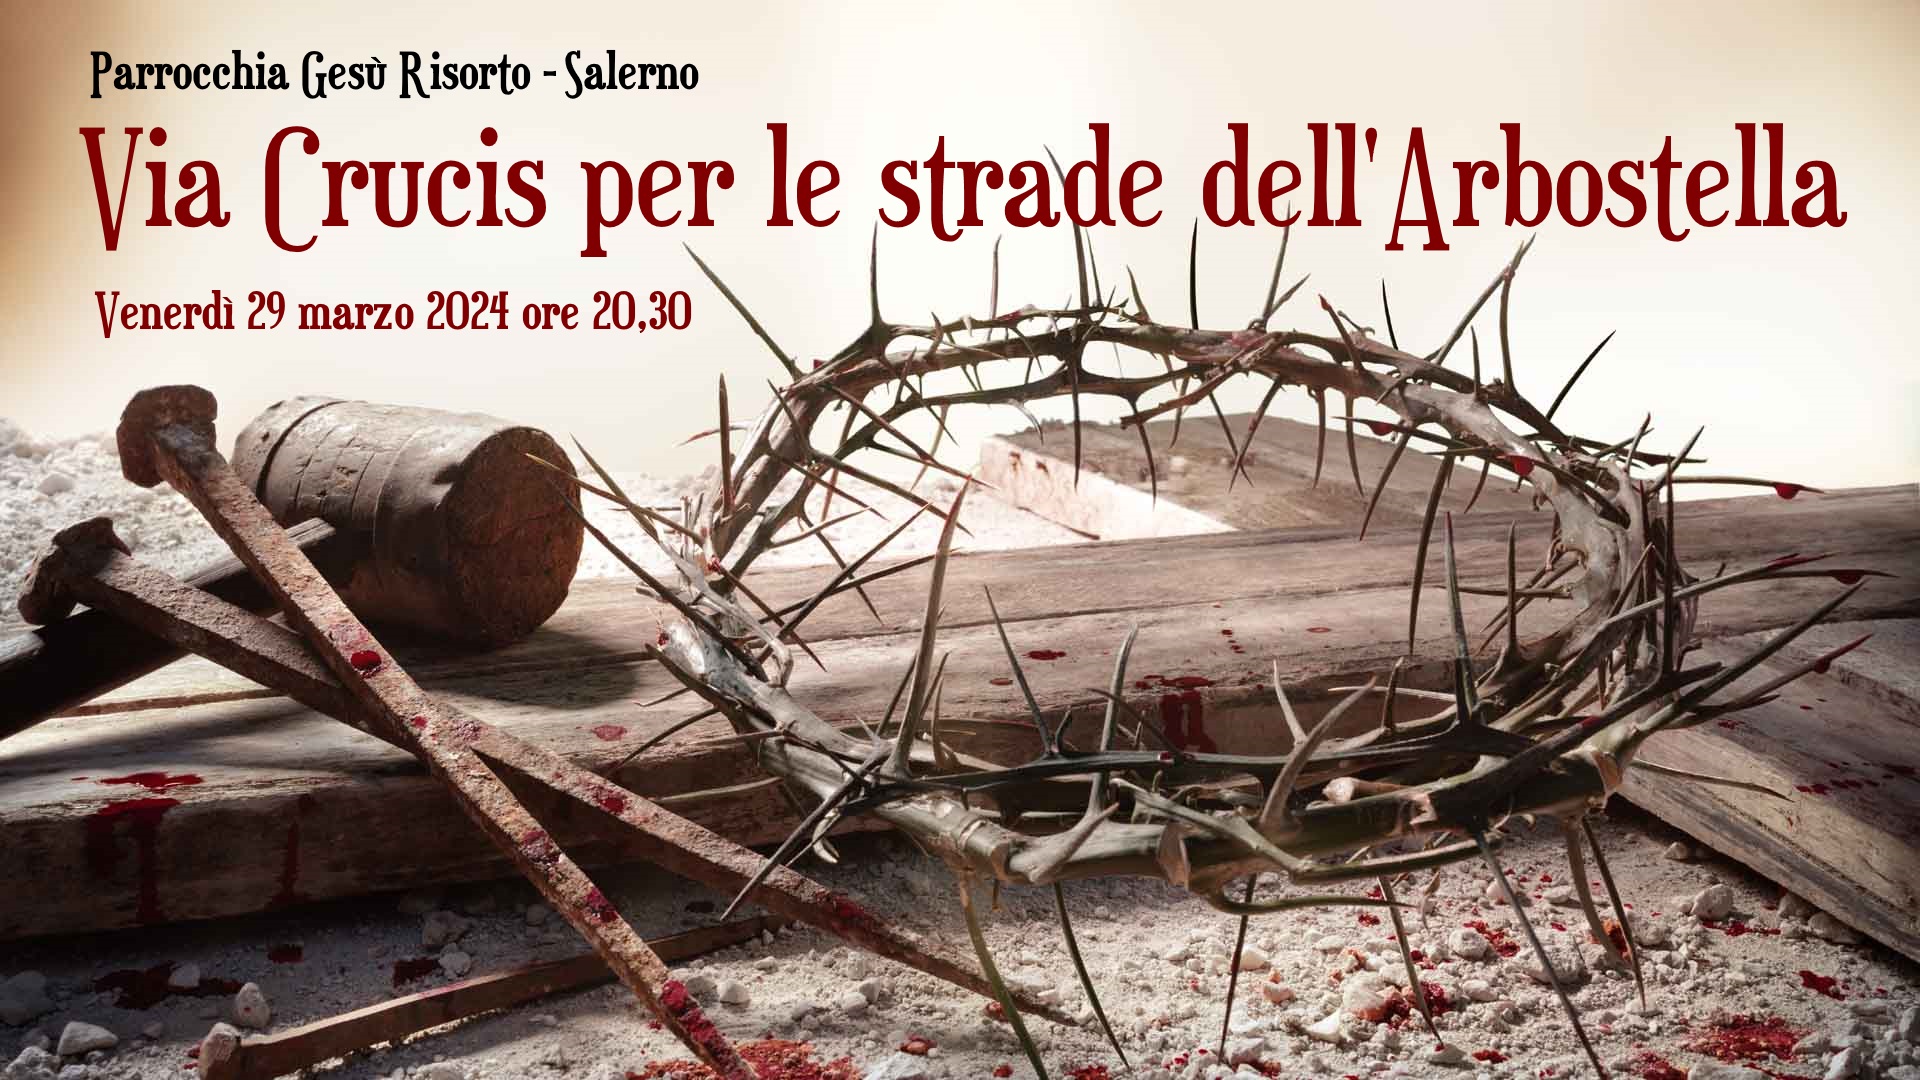 Salerno: Parrocchia Gesù Risorto, Via Crucis all’Arbostella